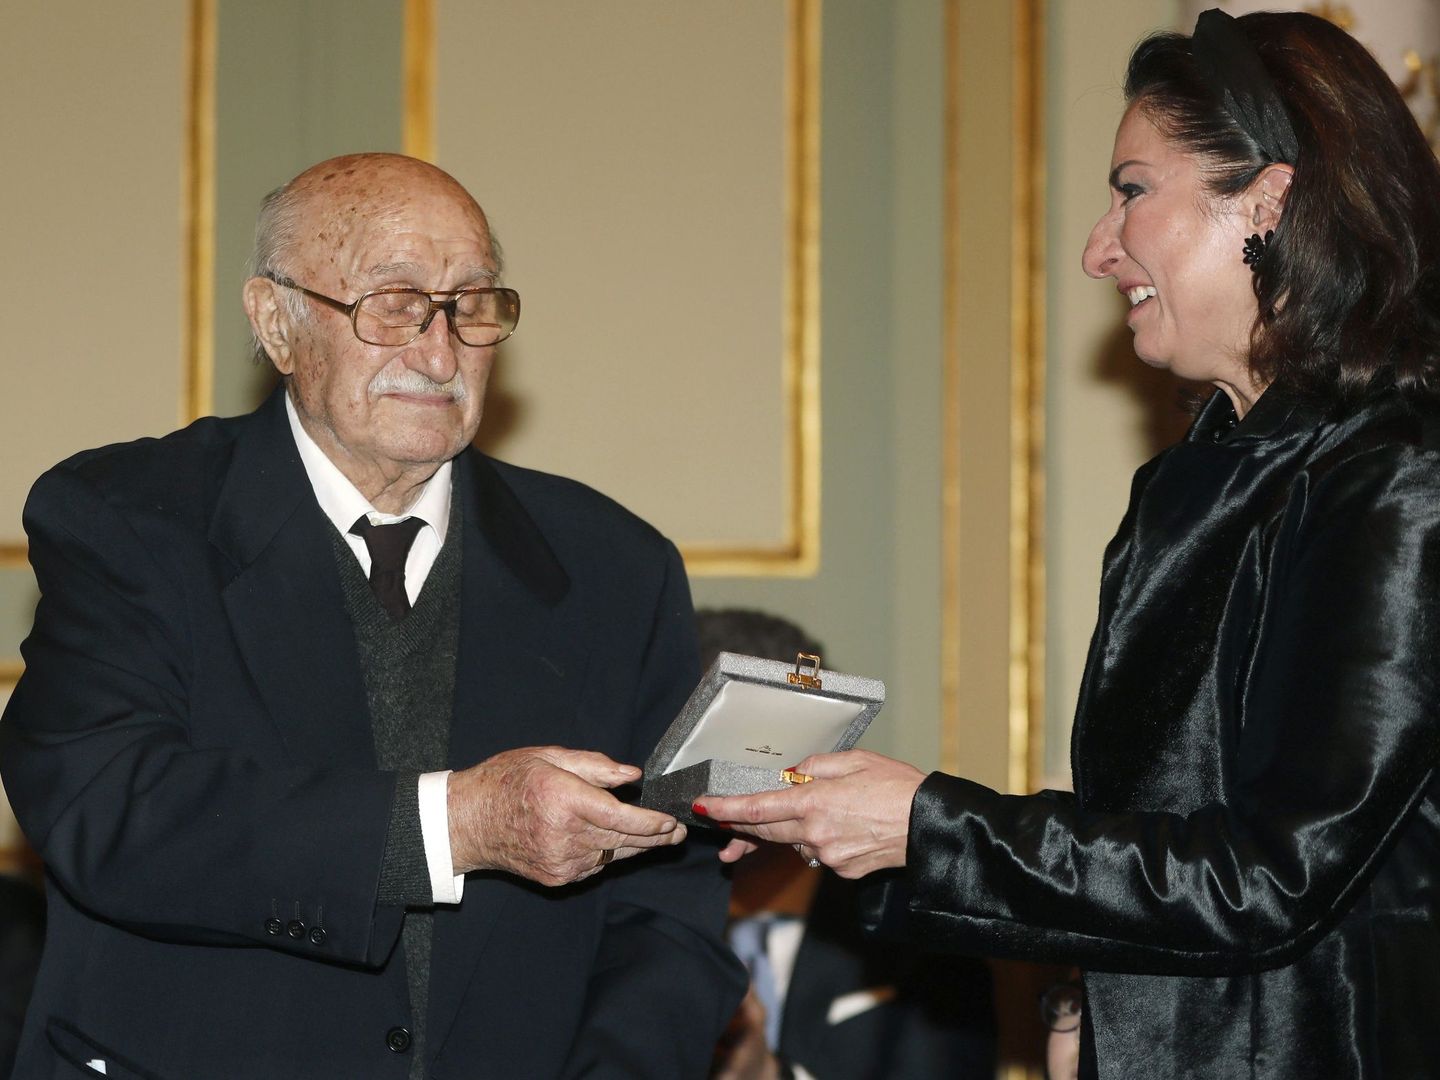 Bernabé Martí, viudo de Montserrat Caballé, recibe la Medalla de Oro de la ciudad de manos de su hija, Montse Martí. (EFE)